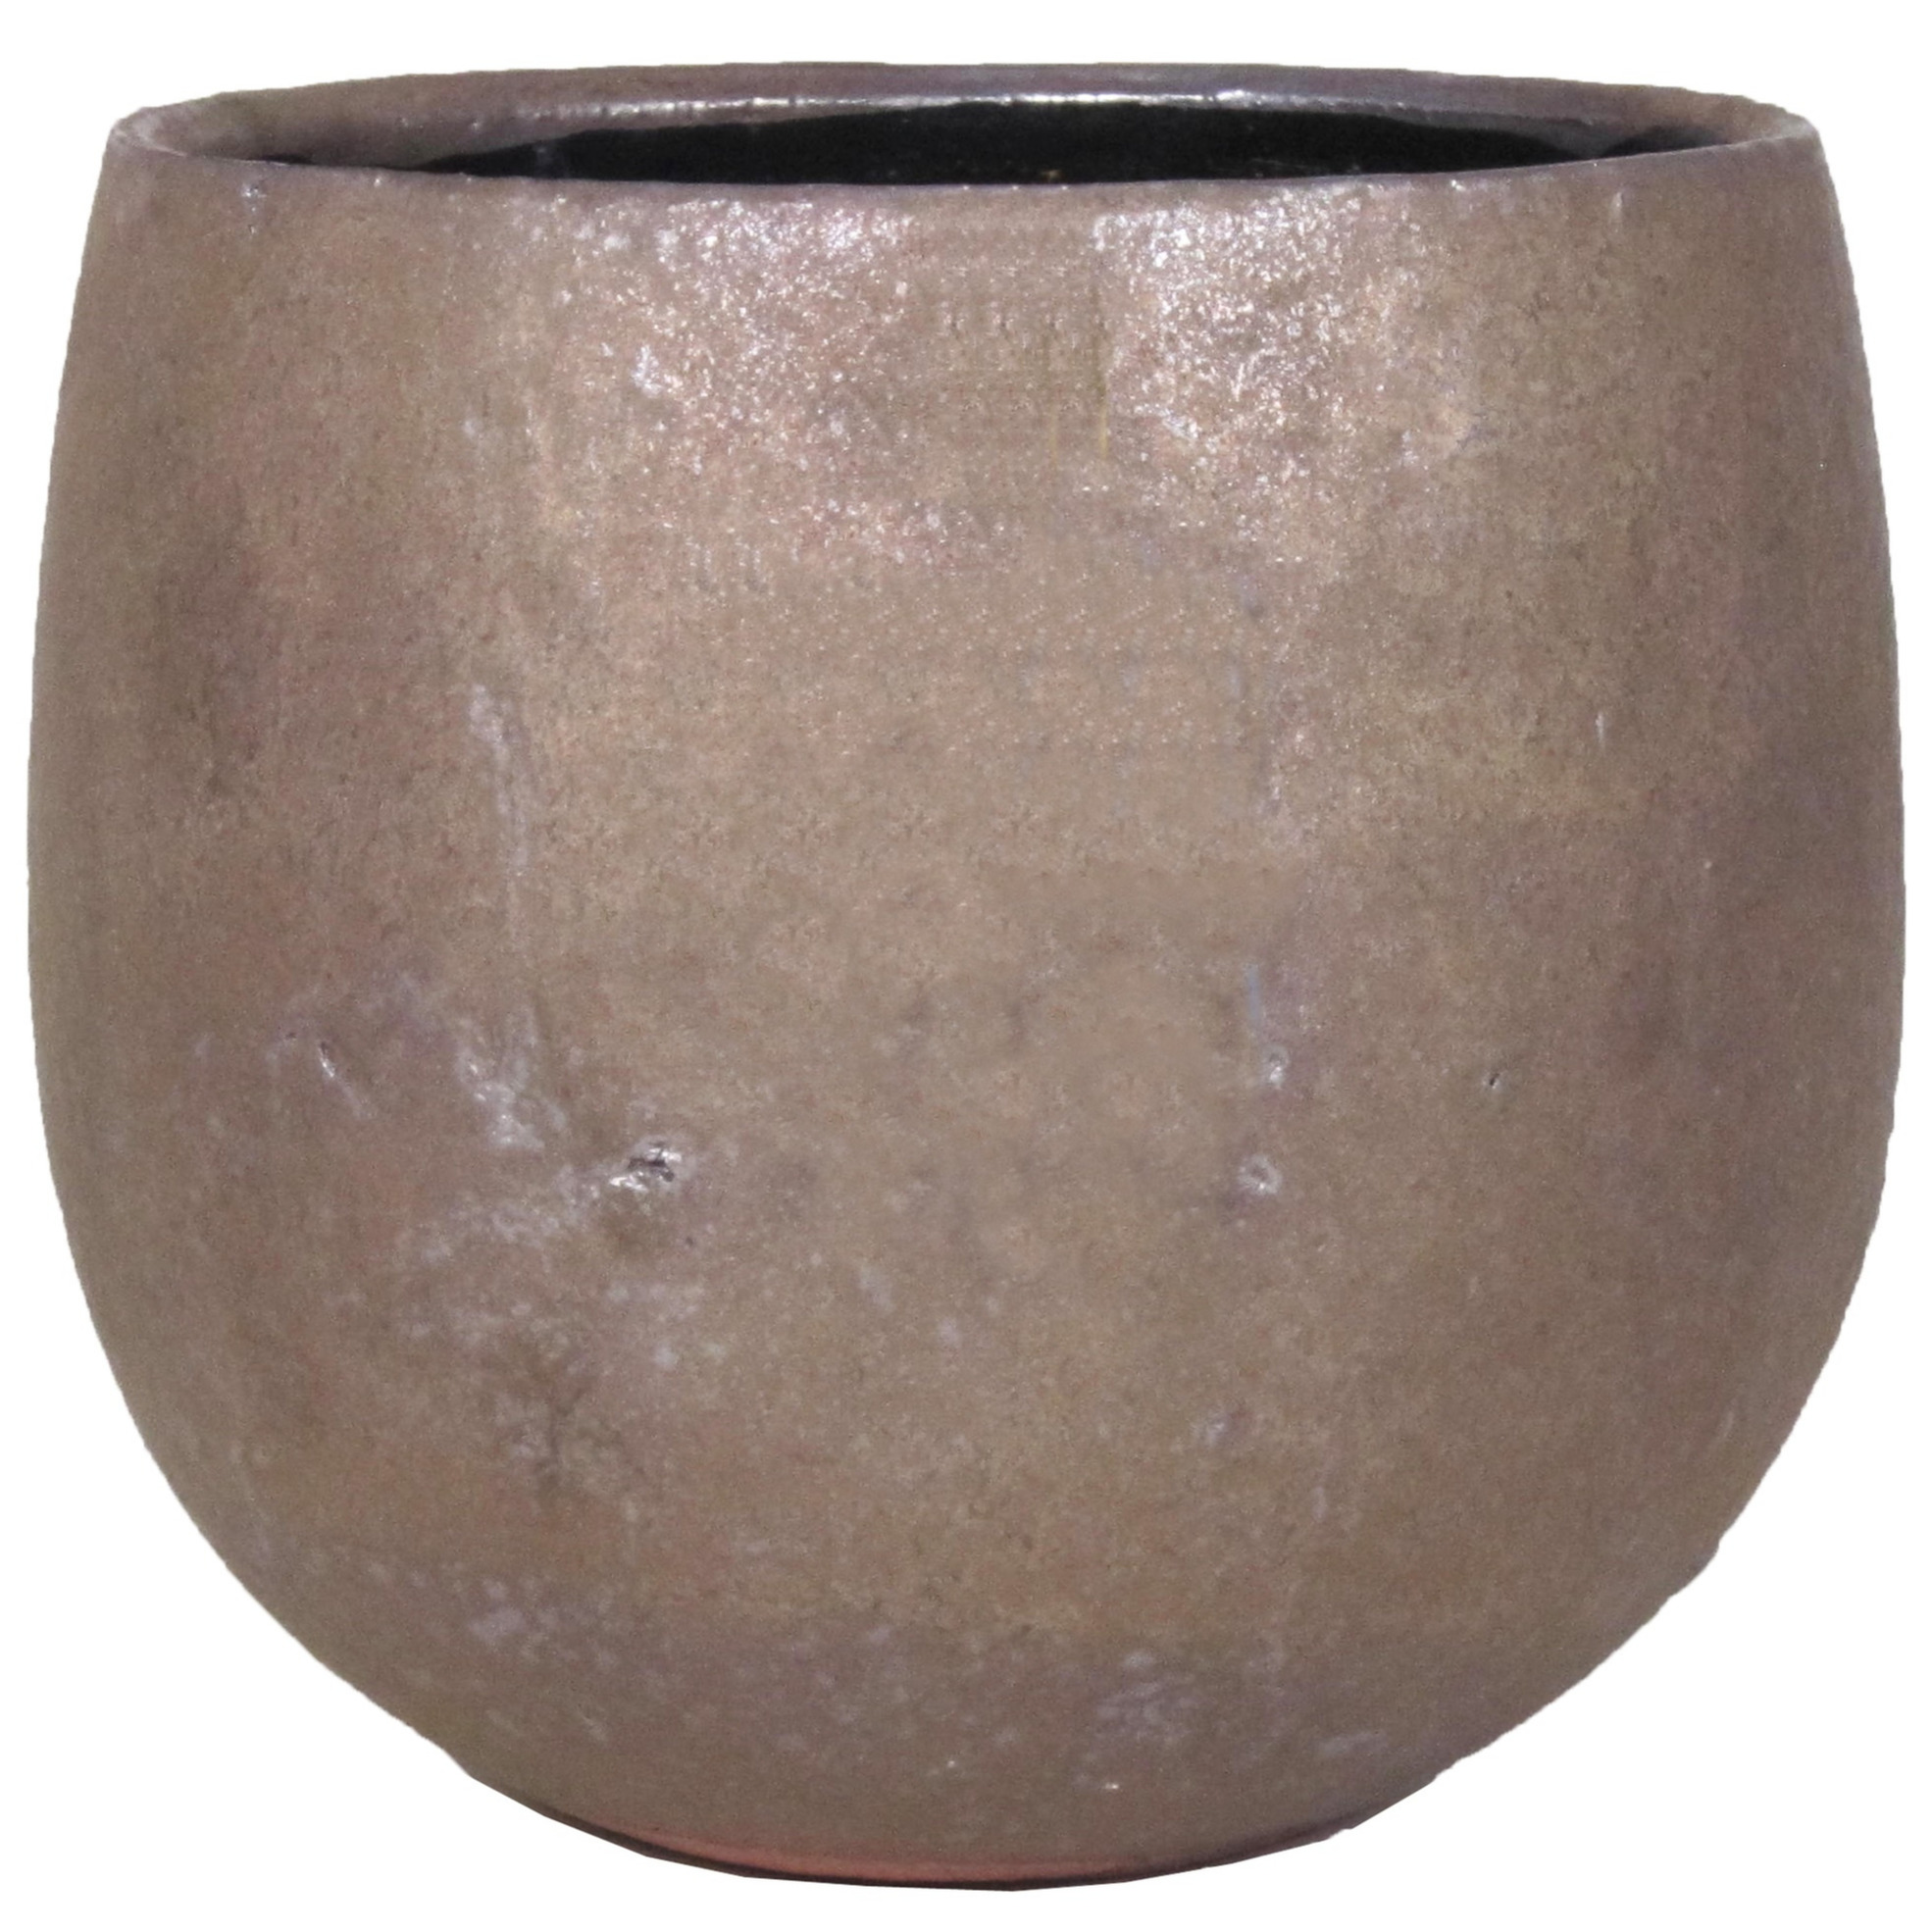 Bloempot-plantenpot schaal van keramiek glanzend brons kleur motief D19 cm en H17 cm